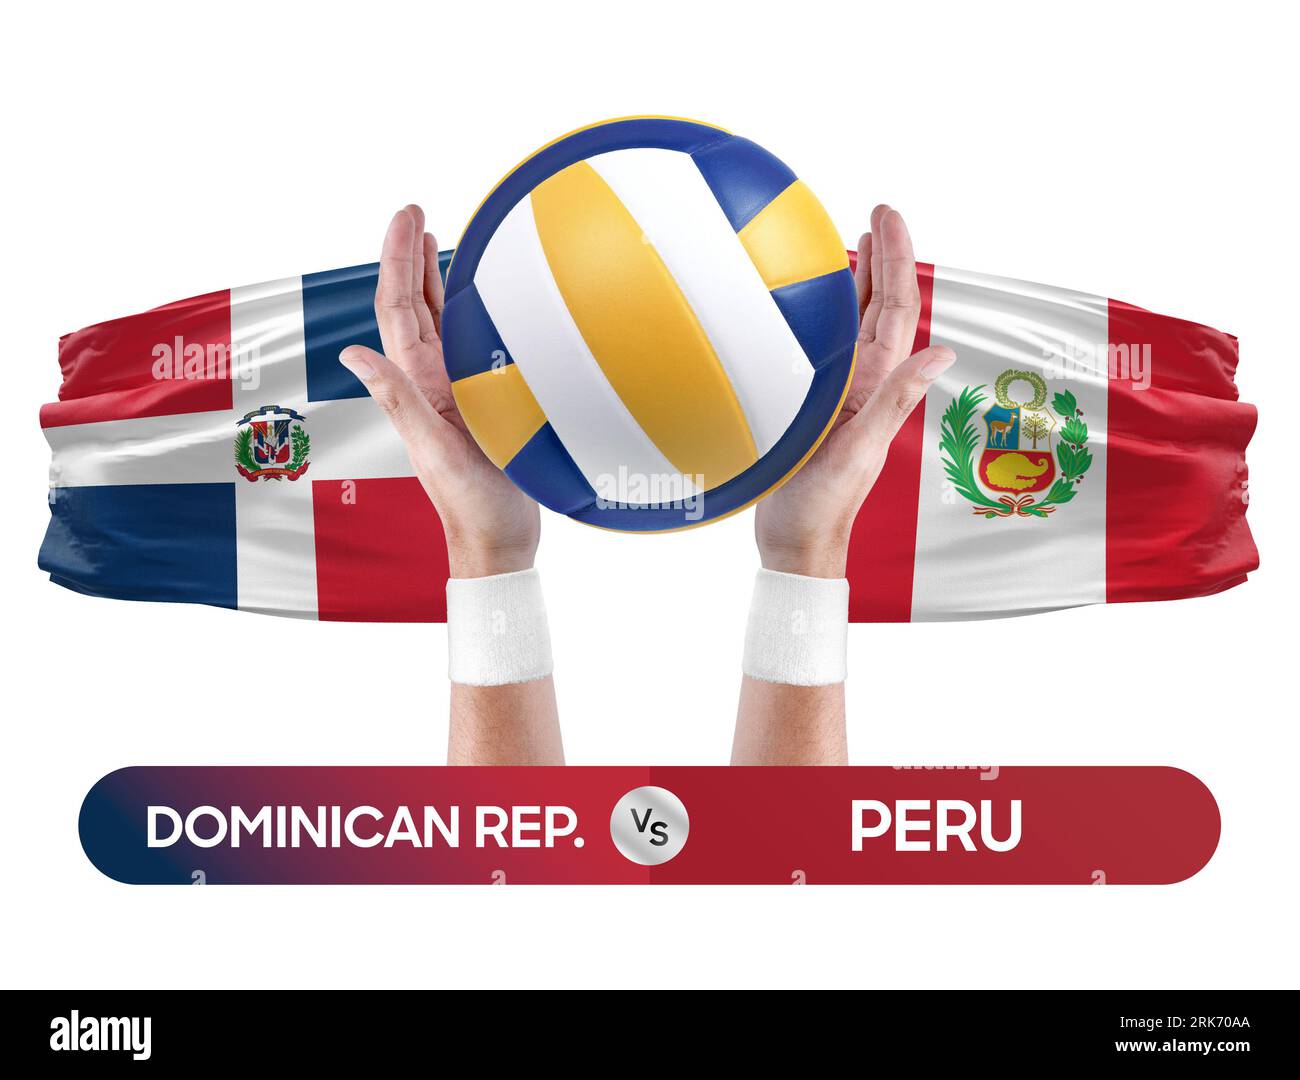 République dominicaine vs Pérou équipe nationale de volley-ball concept de compétition de match de volley-ball. Banque D'Images